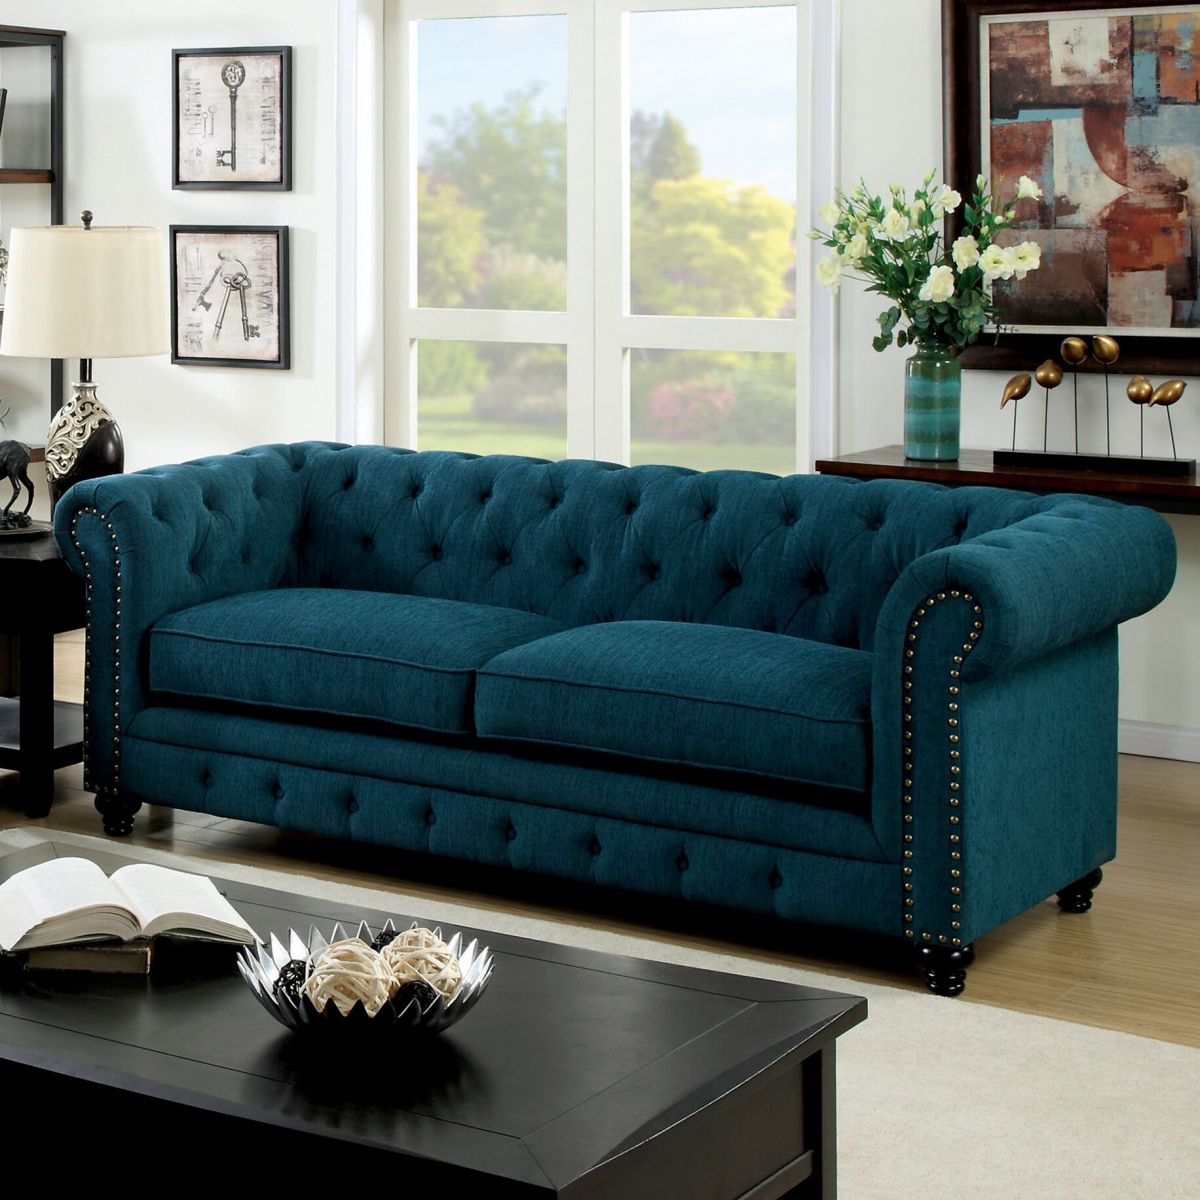 Sofa tân cổ điển có giá từ 10 - 20 triệu